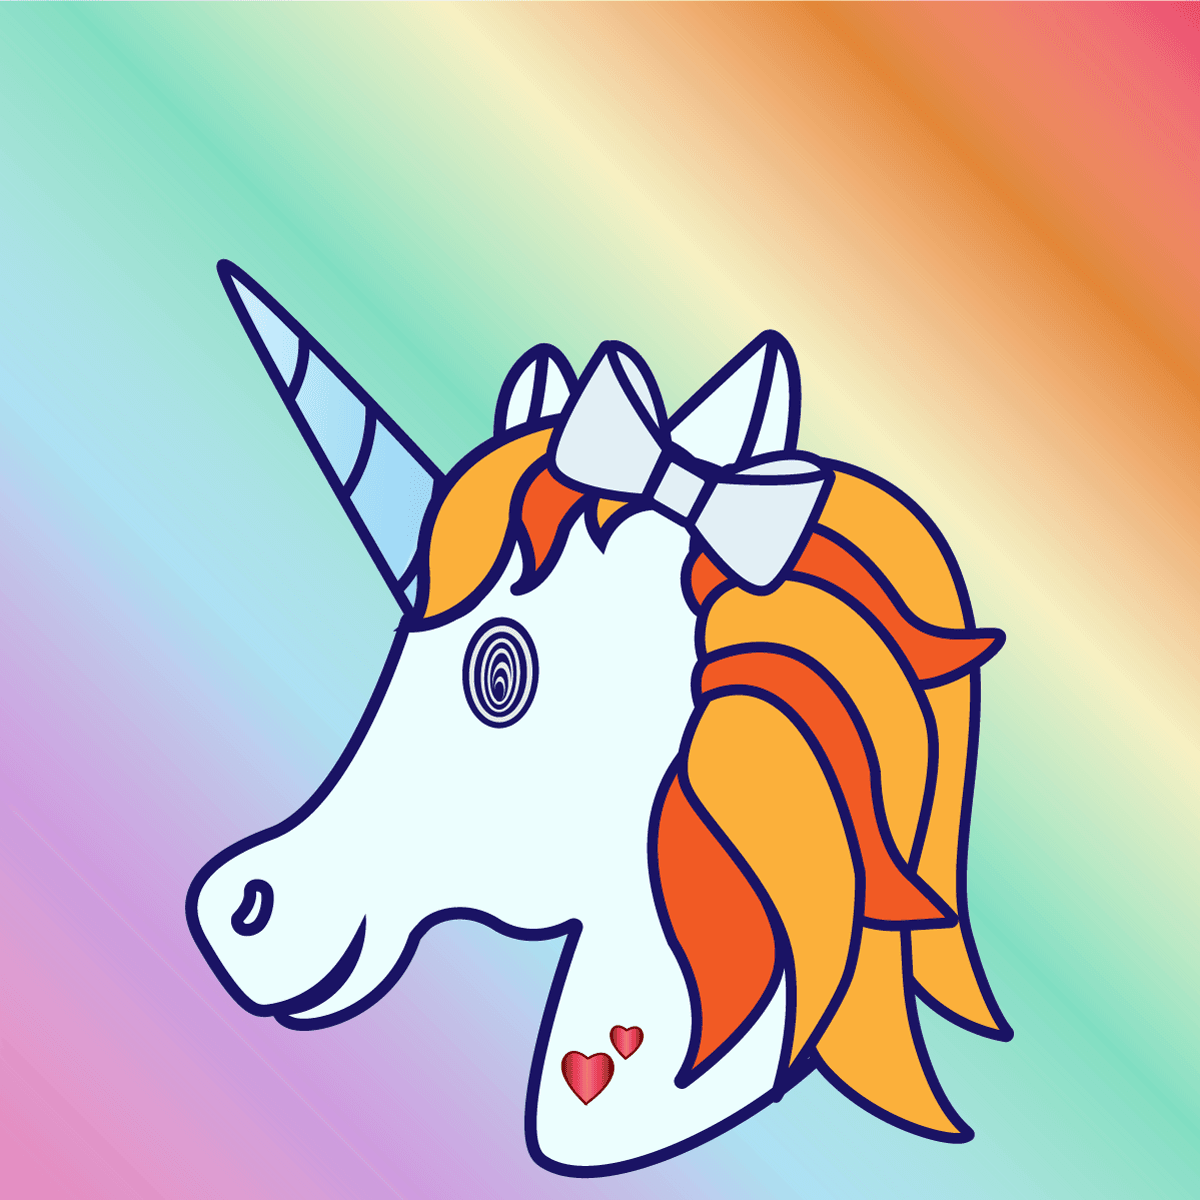 Uncanny Unicorn #10